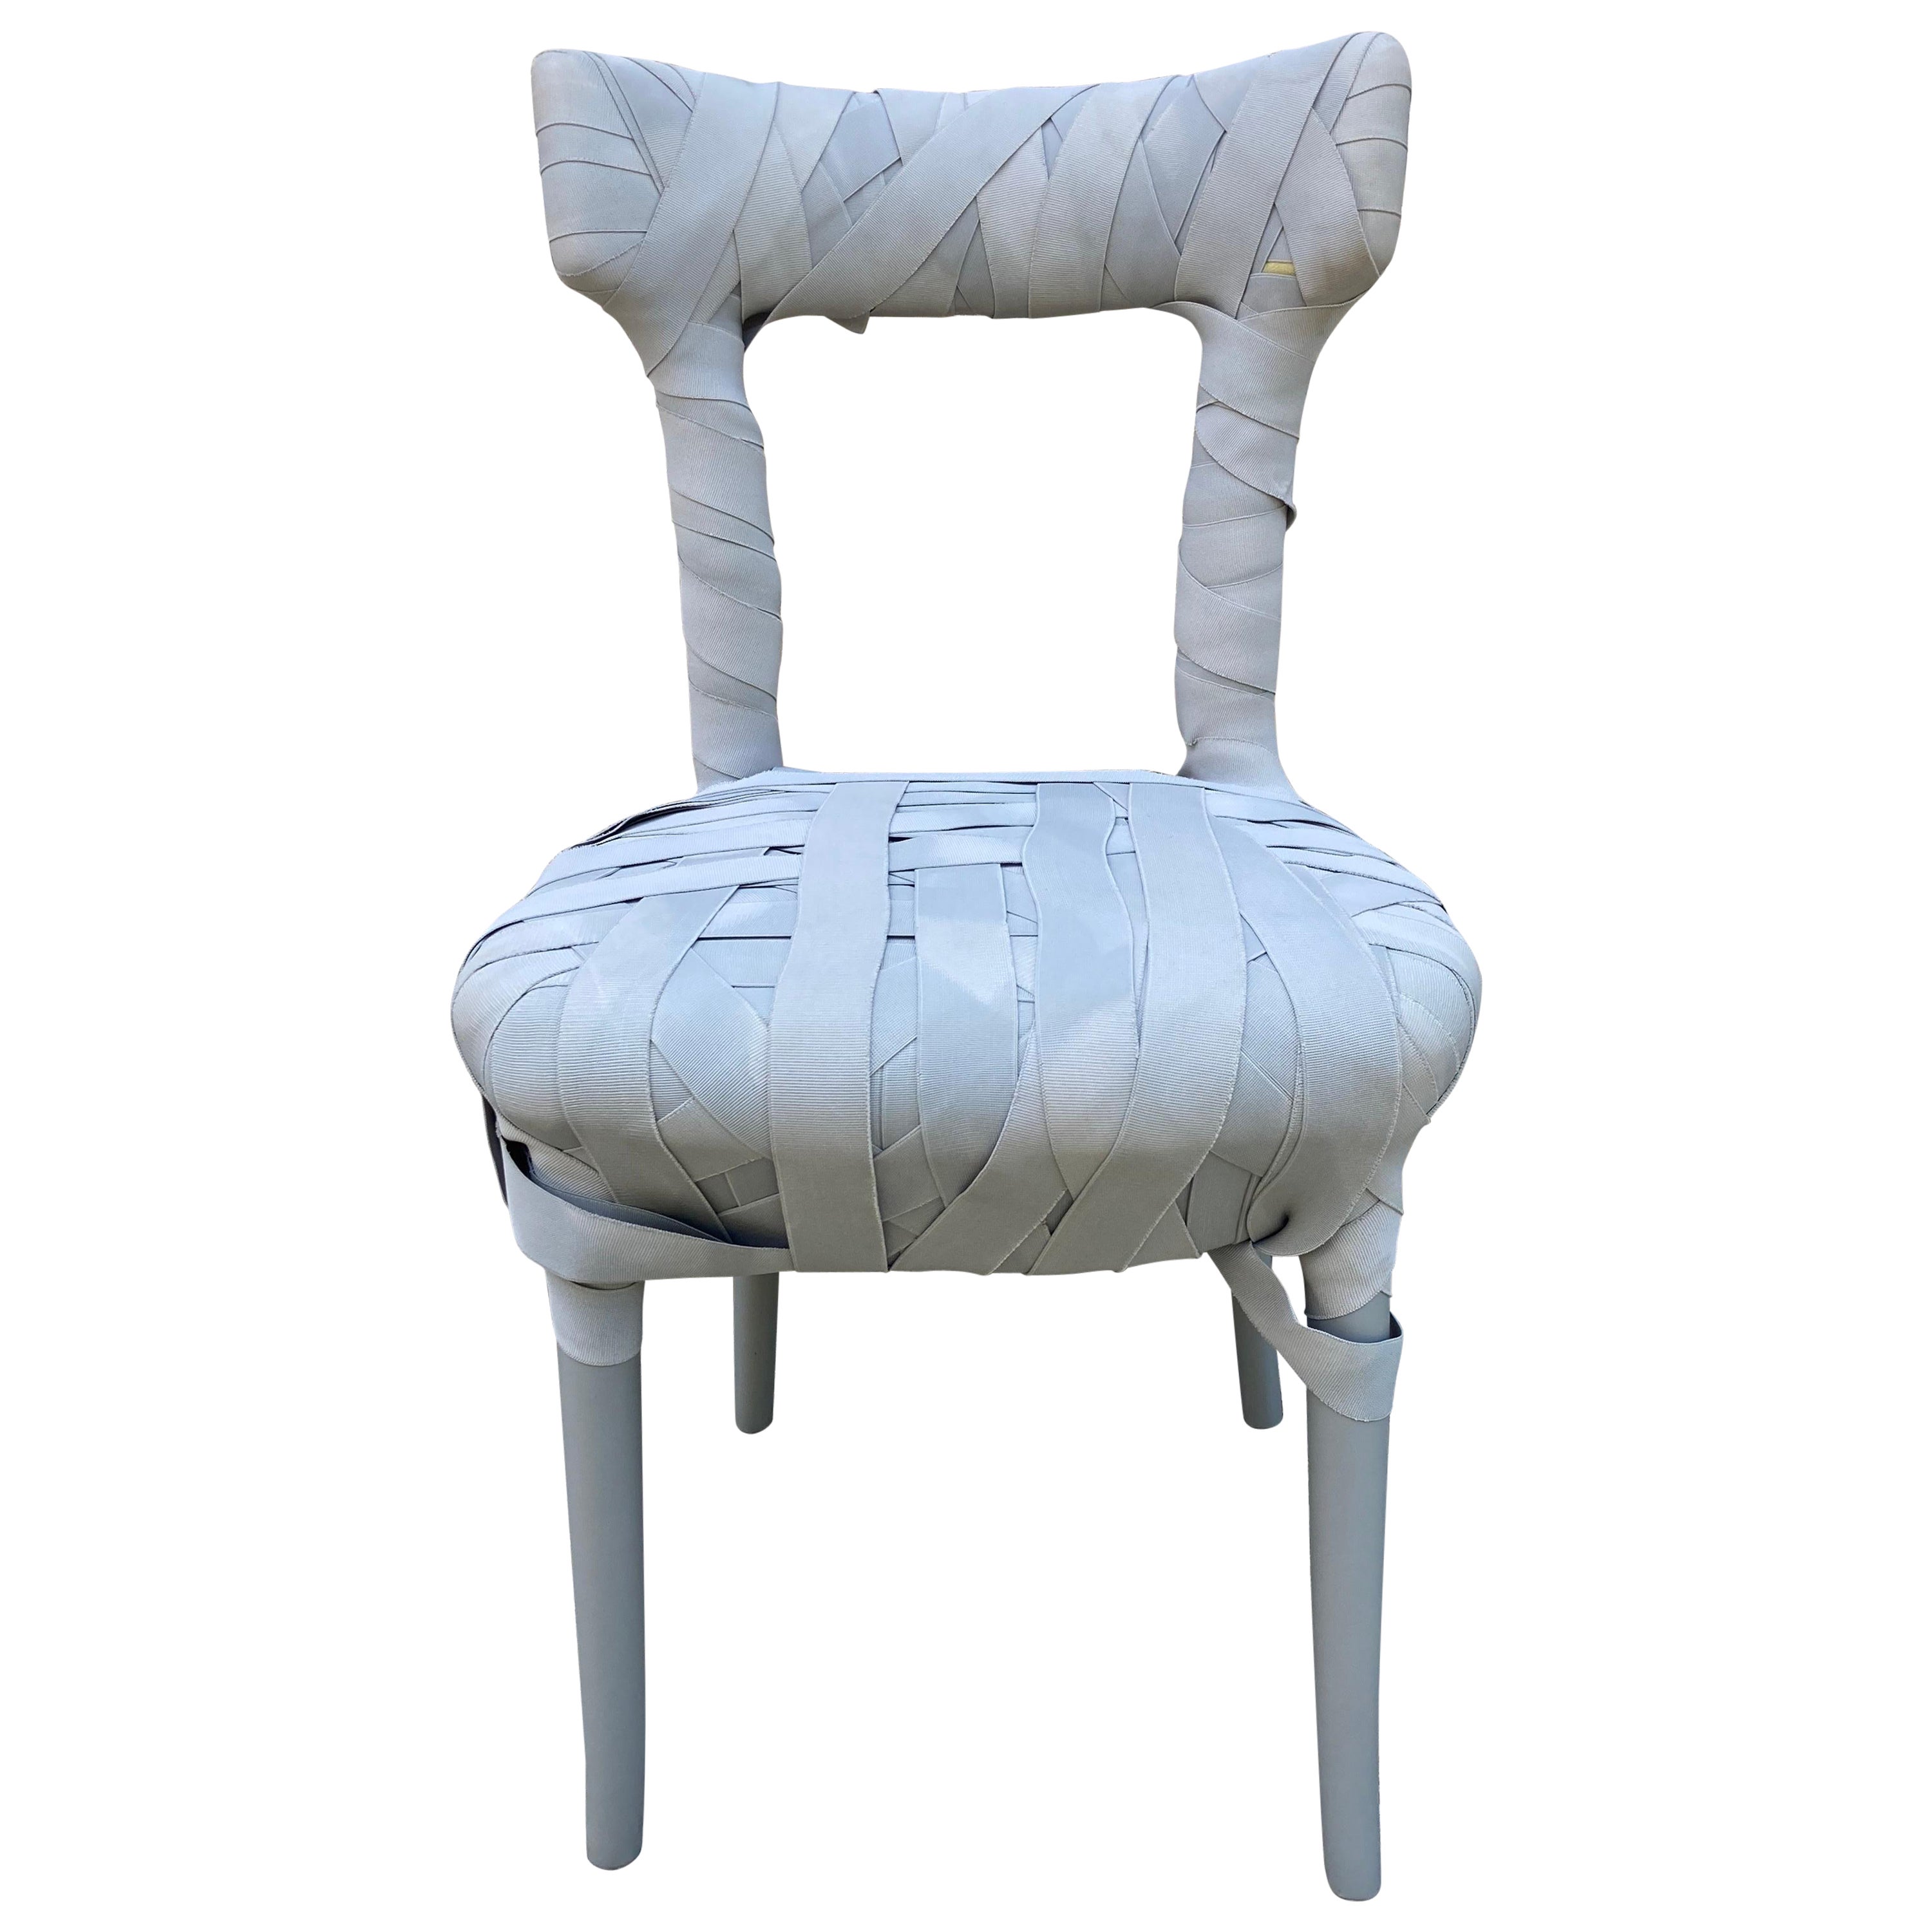 Peter Traag für Edra „Mummy Chair“